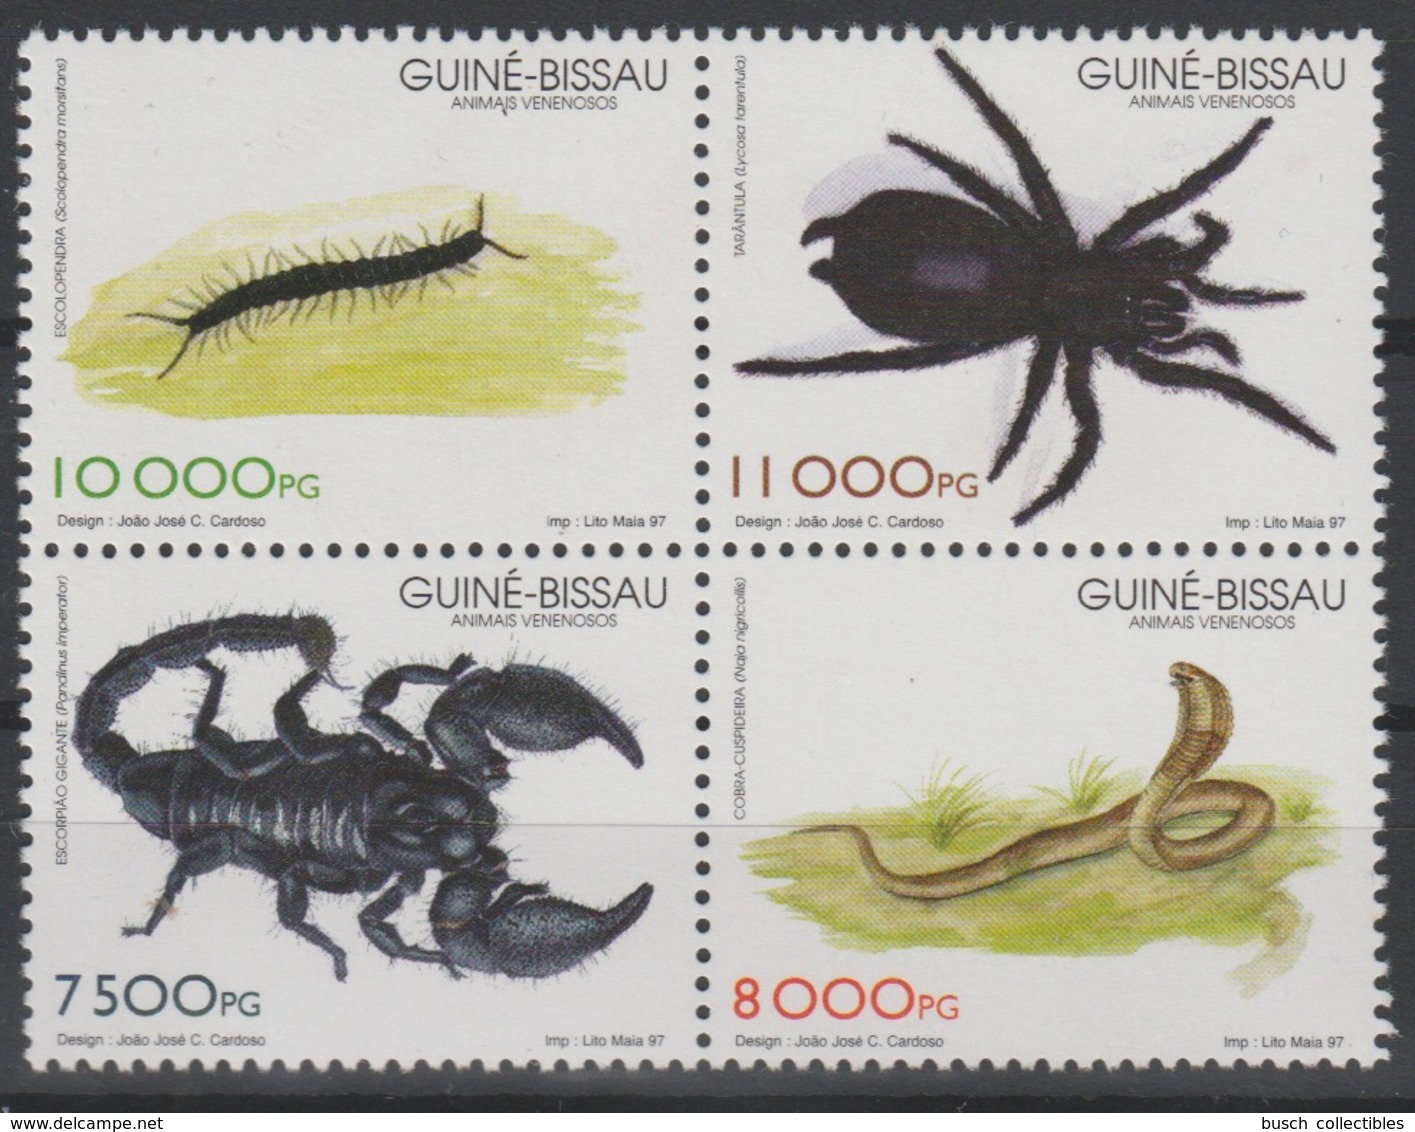 Guiné-Bissau Guinea Guinée Bissau 1997 Mi. 1252 - 1255 Poisonous Animals Fauna Block Of 4 Serpent Snake Scorpion Spider - Schlangen